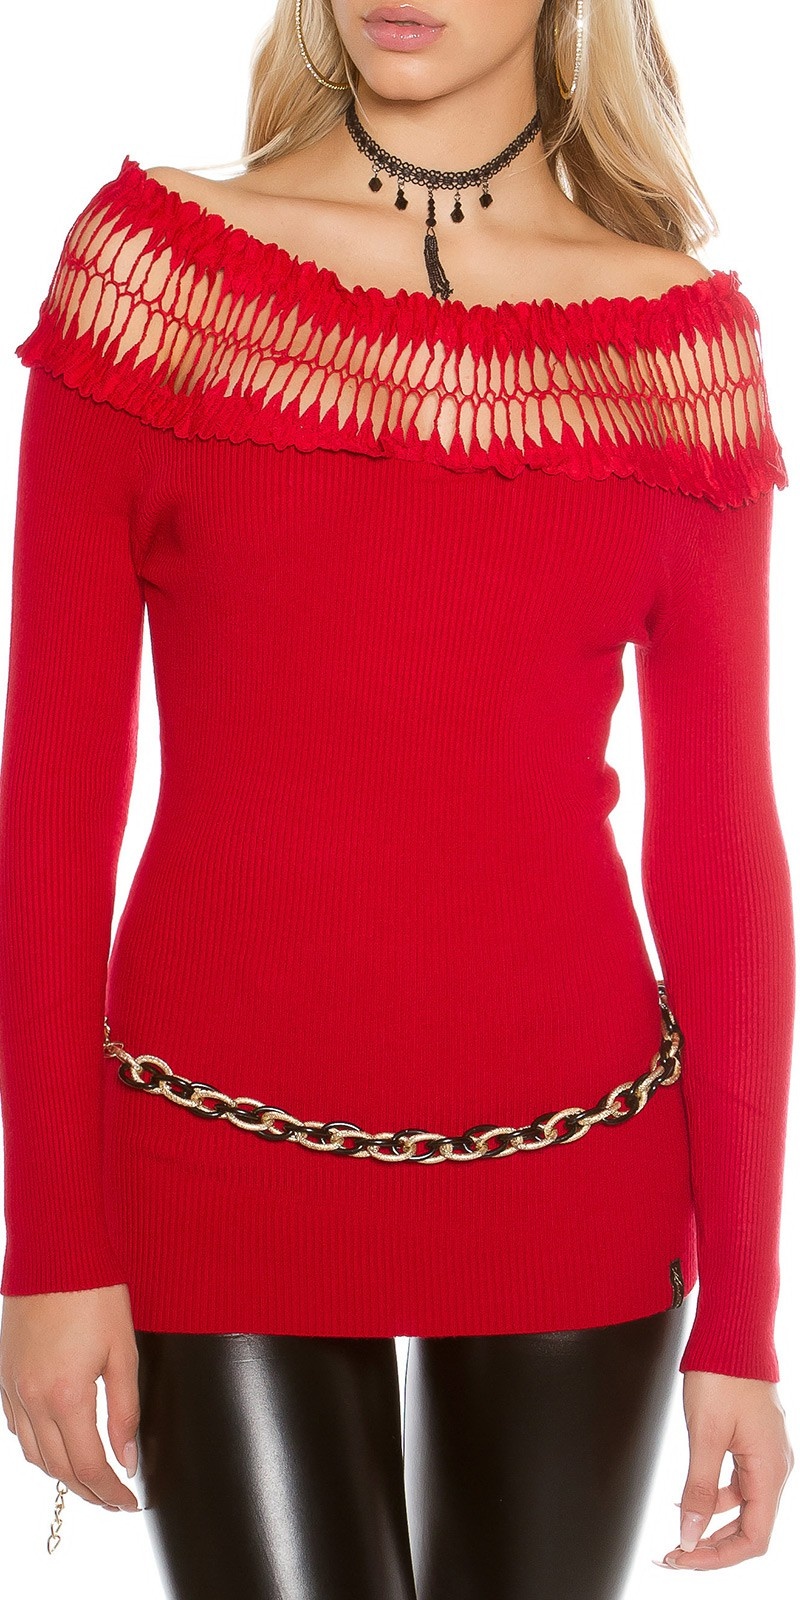 Sexy fijn gebreide trui met carmen hals rood